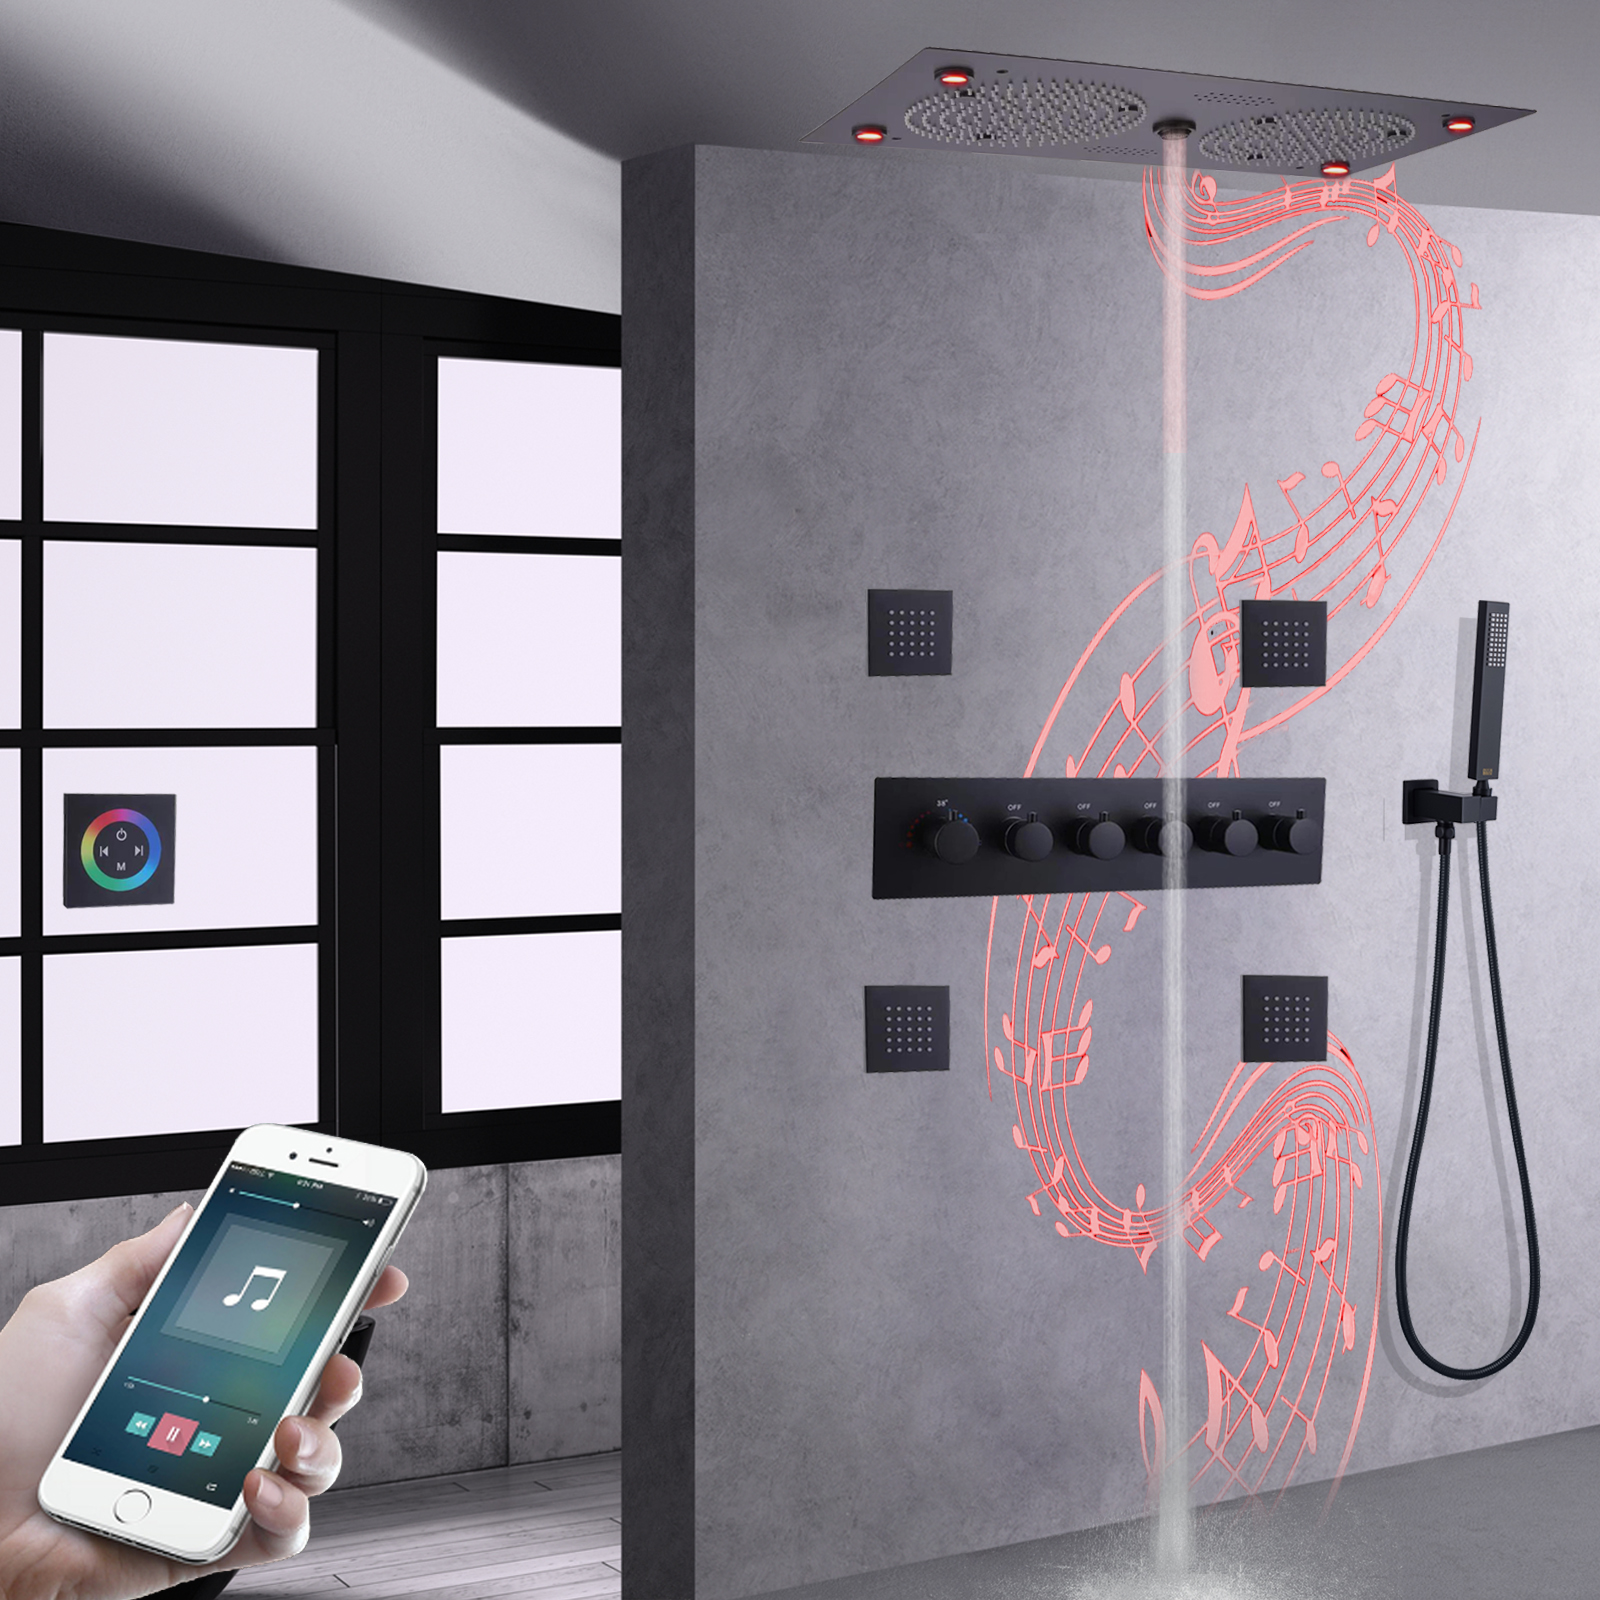 Sistemas de ducha de música LED negro mate, juego de ducha de lluvia termostática con grifo oculto para baño